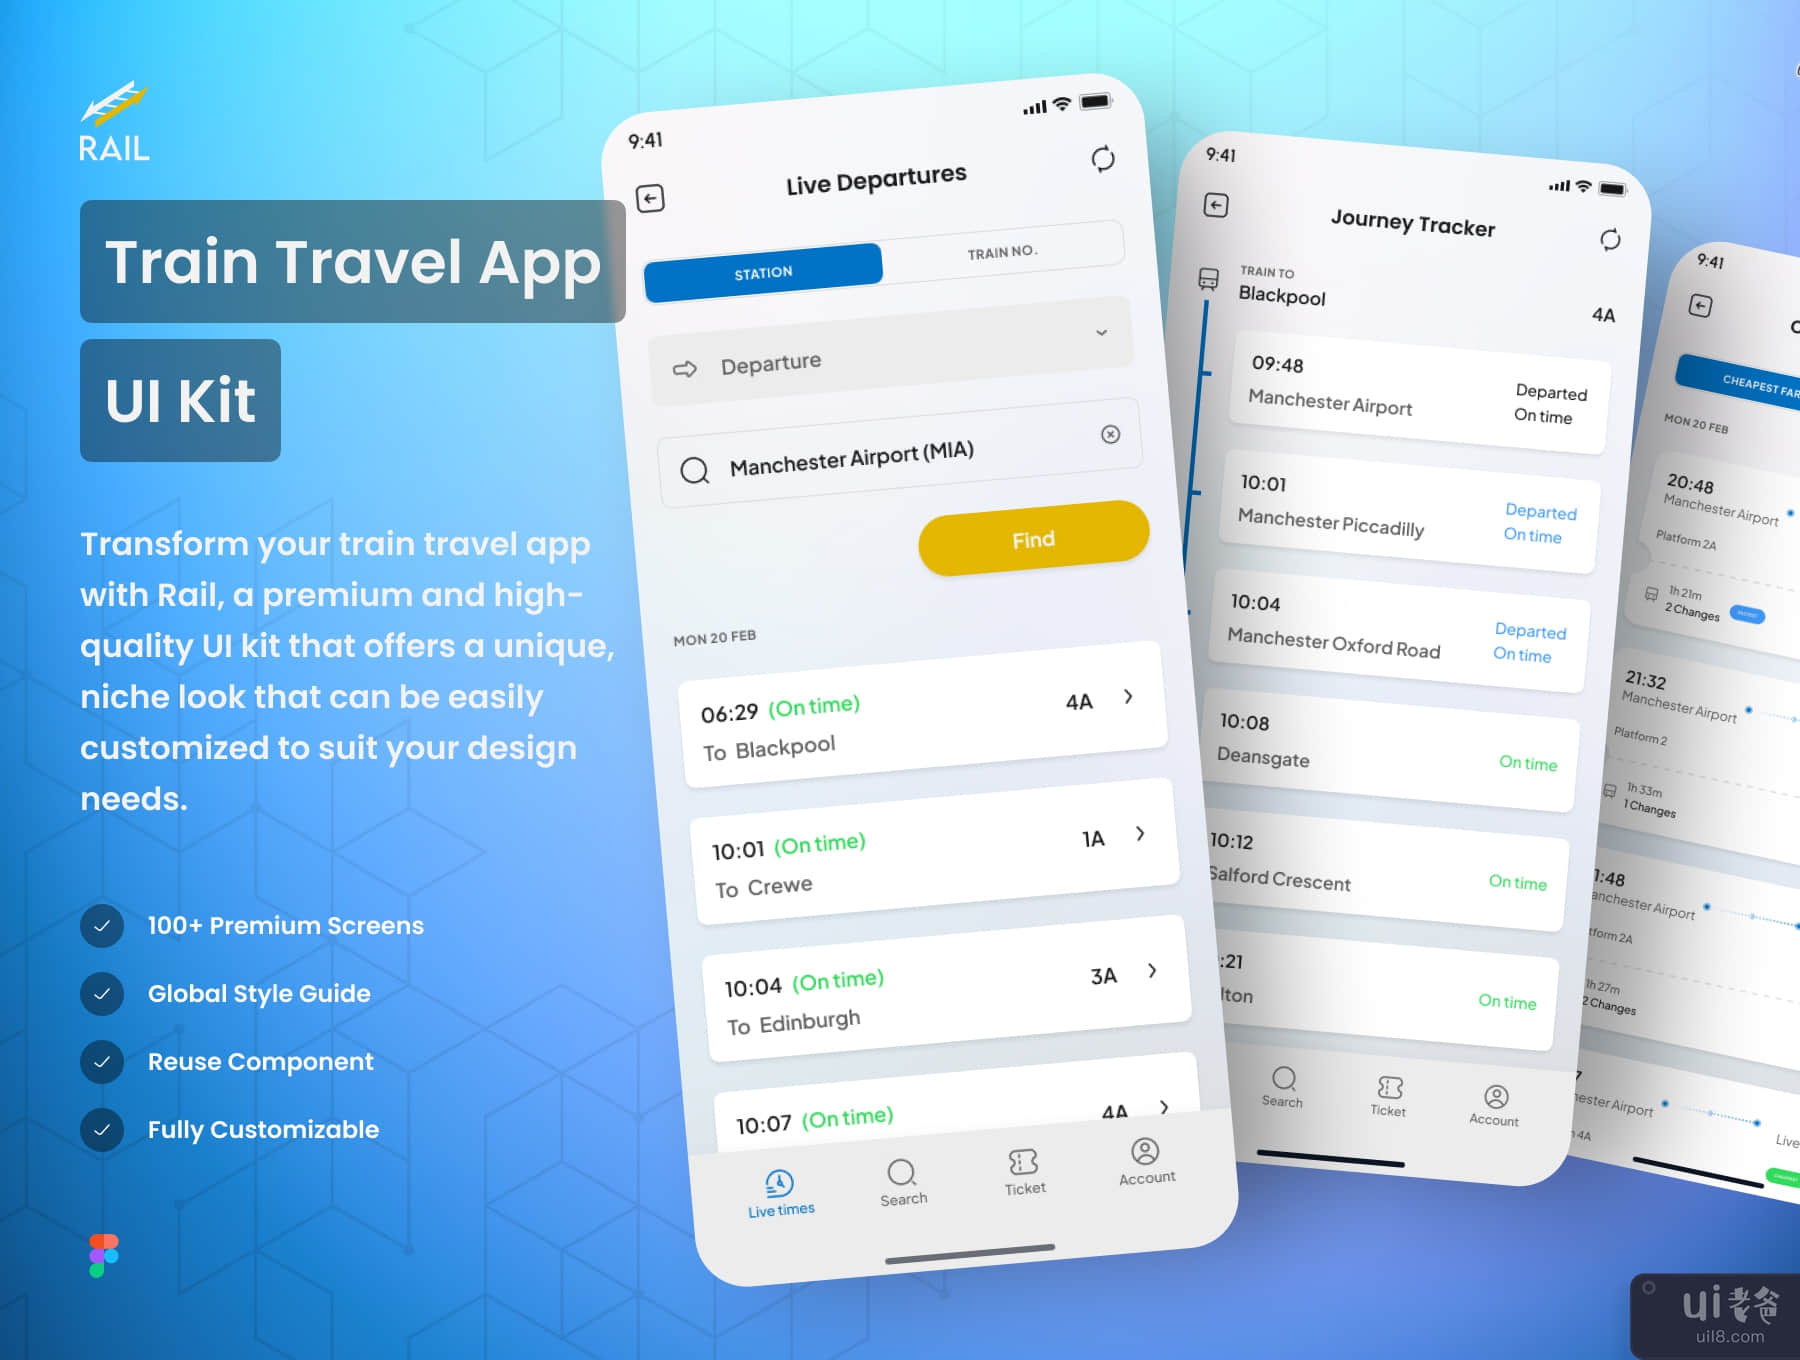 铁路 - 火车旅行应用程序 UI 工具包 (Rail - Train Travel App UI Kit)插图7